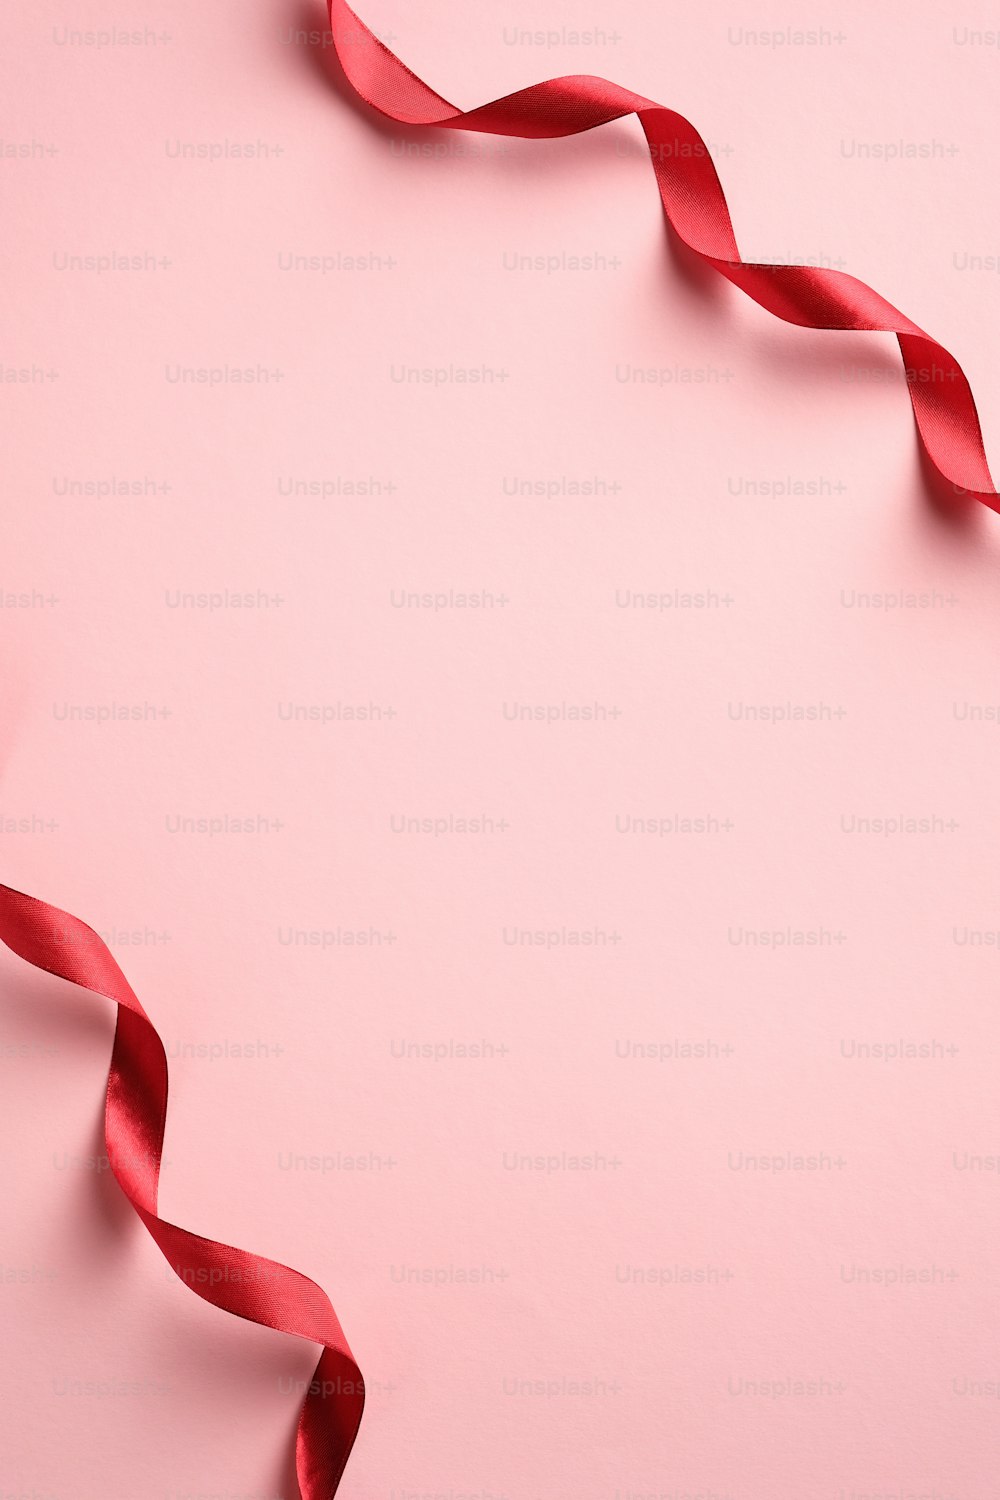 San Valentino, Compleanno, Modello di banner verticale per la festa della mamma con nastro rosso su sfondo rosa. Stile minimalista. Posa piatta, vista dall'alto.